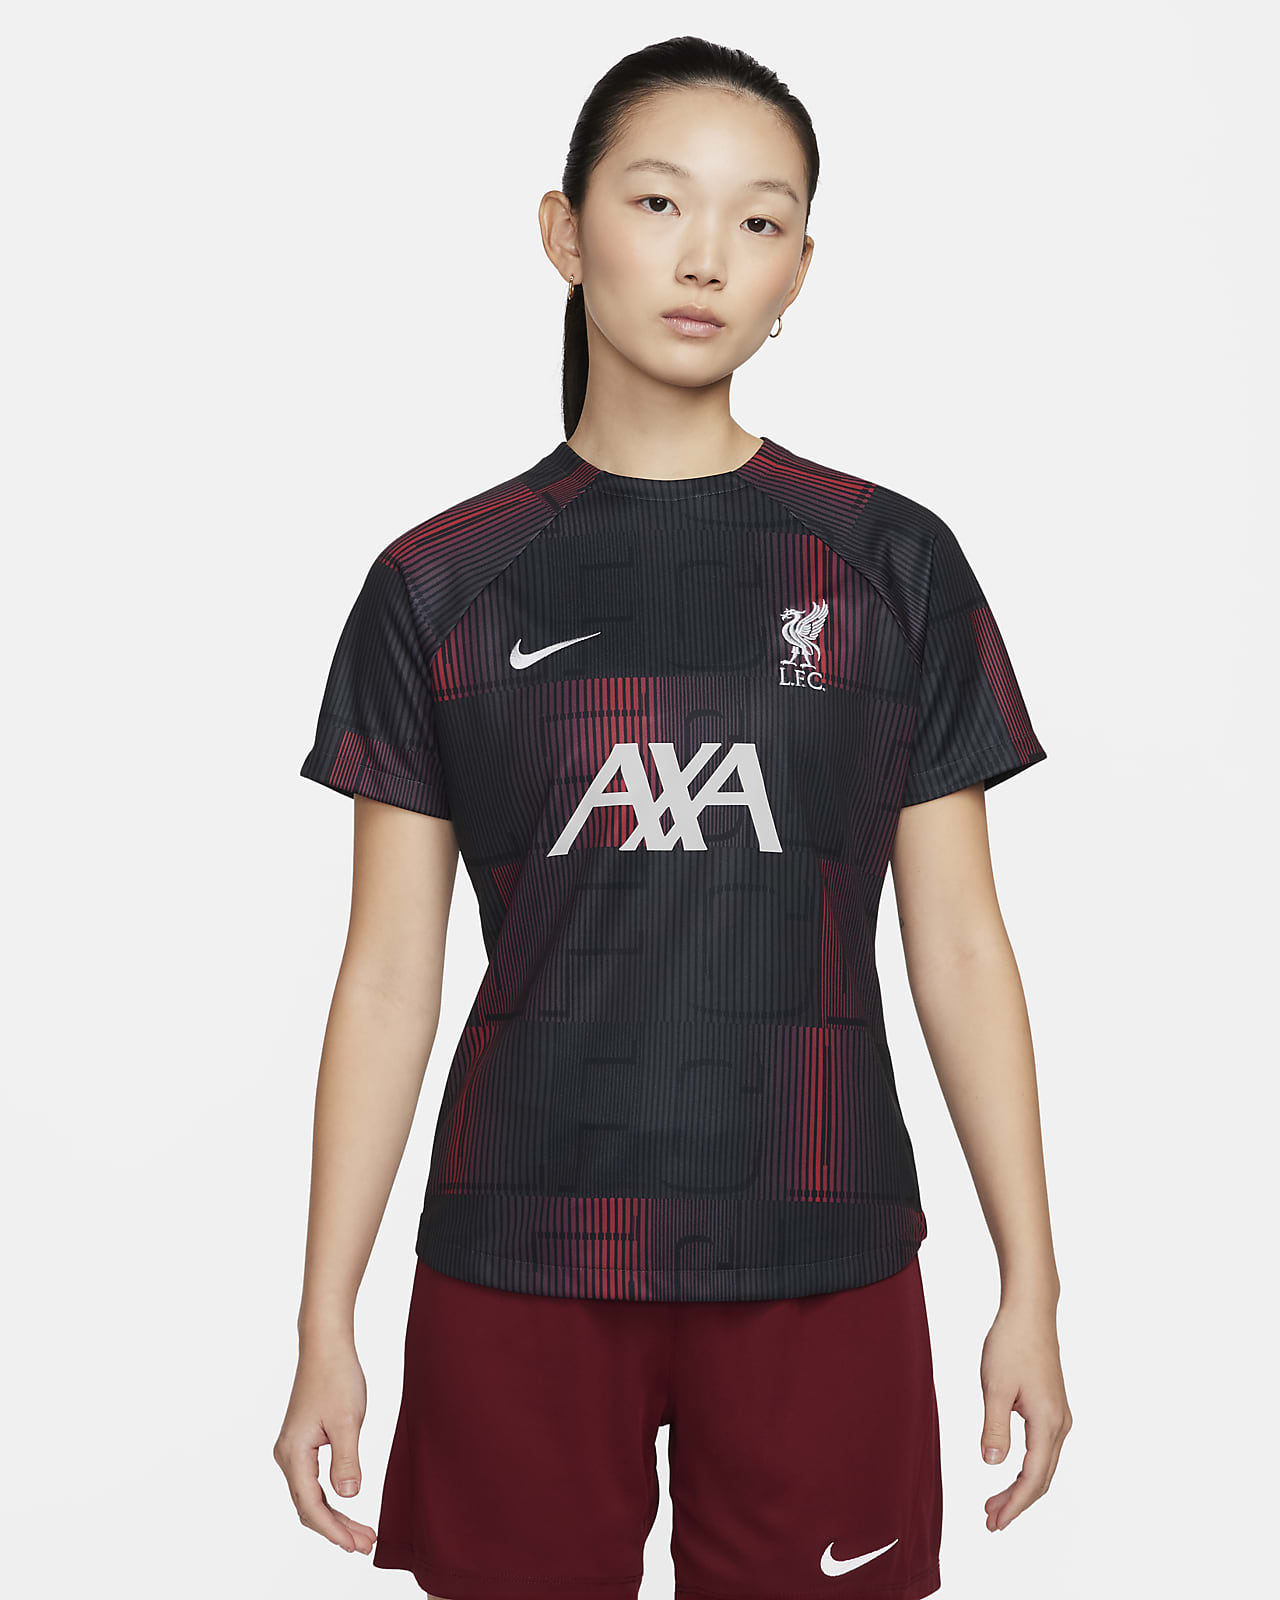 Liverpool FC Academy Pro Nike Dri-FIT mérkőzés előtti, rövid ujjú női futballfelső